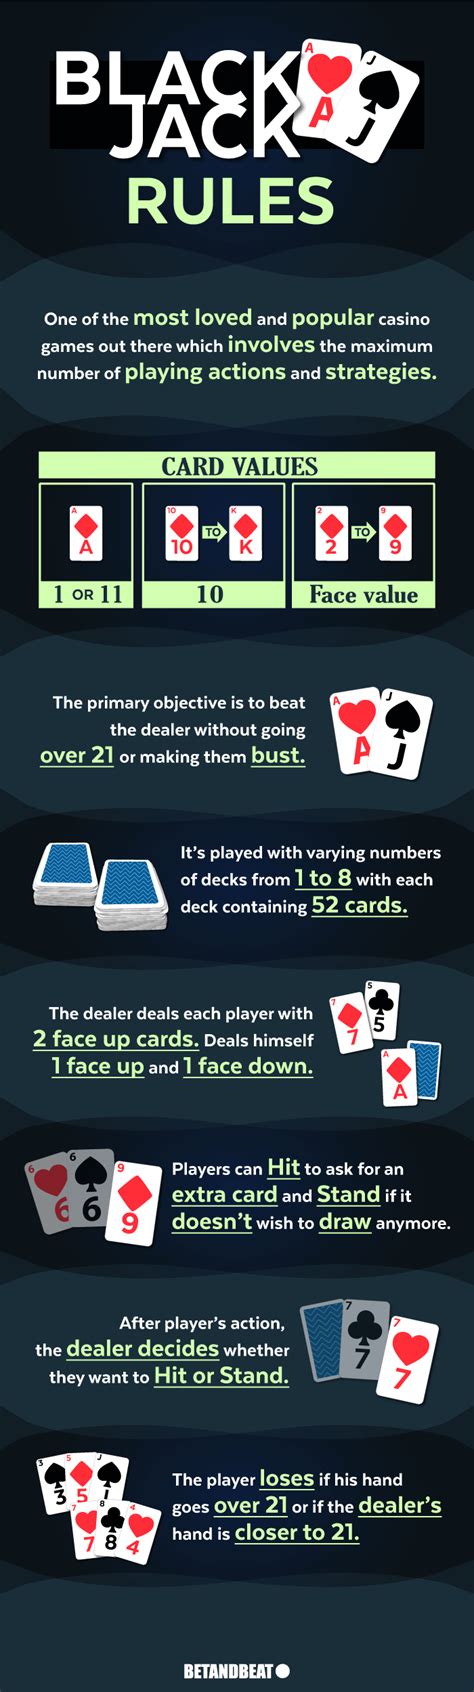 blackjack deck rules frye